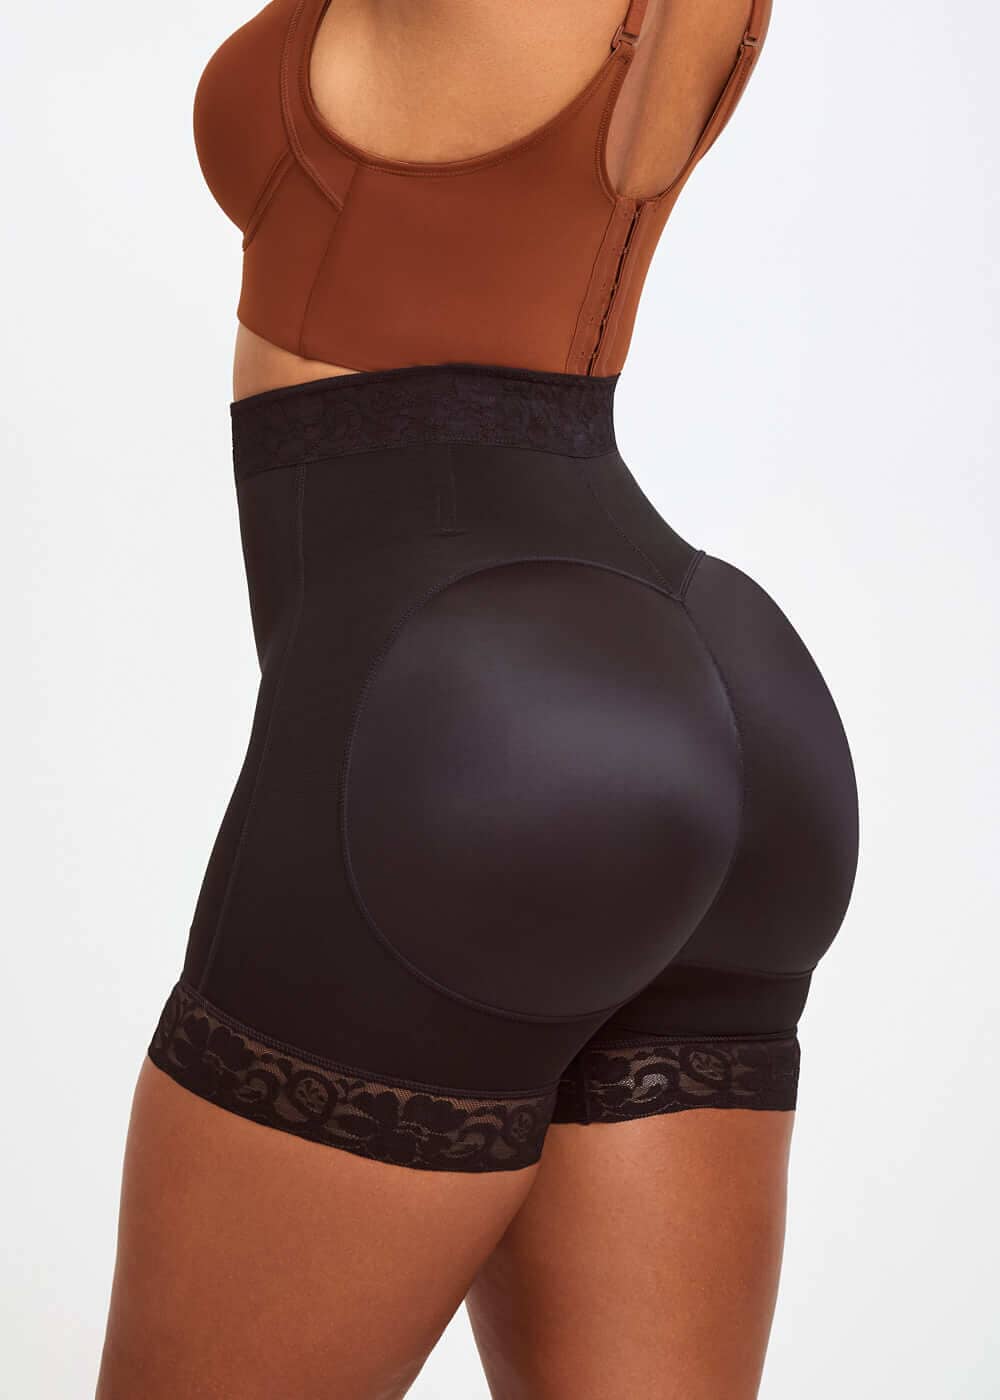 Seamless Shapewear Shorts for Women High Waist Butt Lifter Women